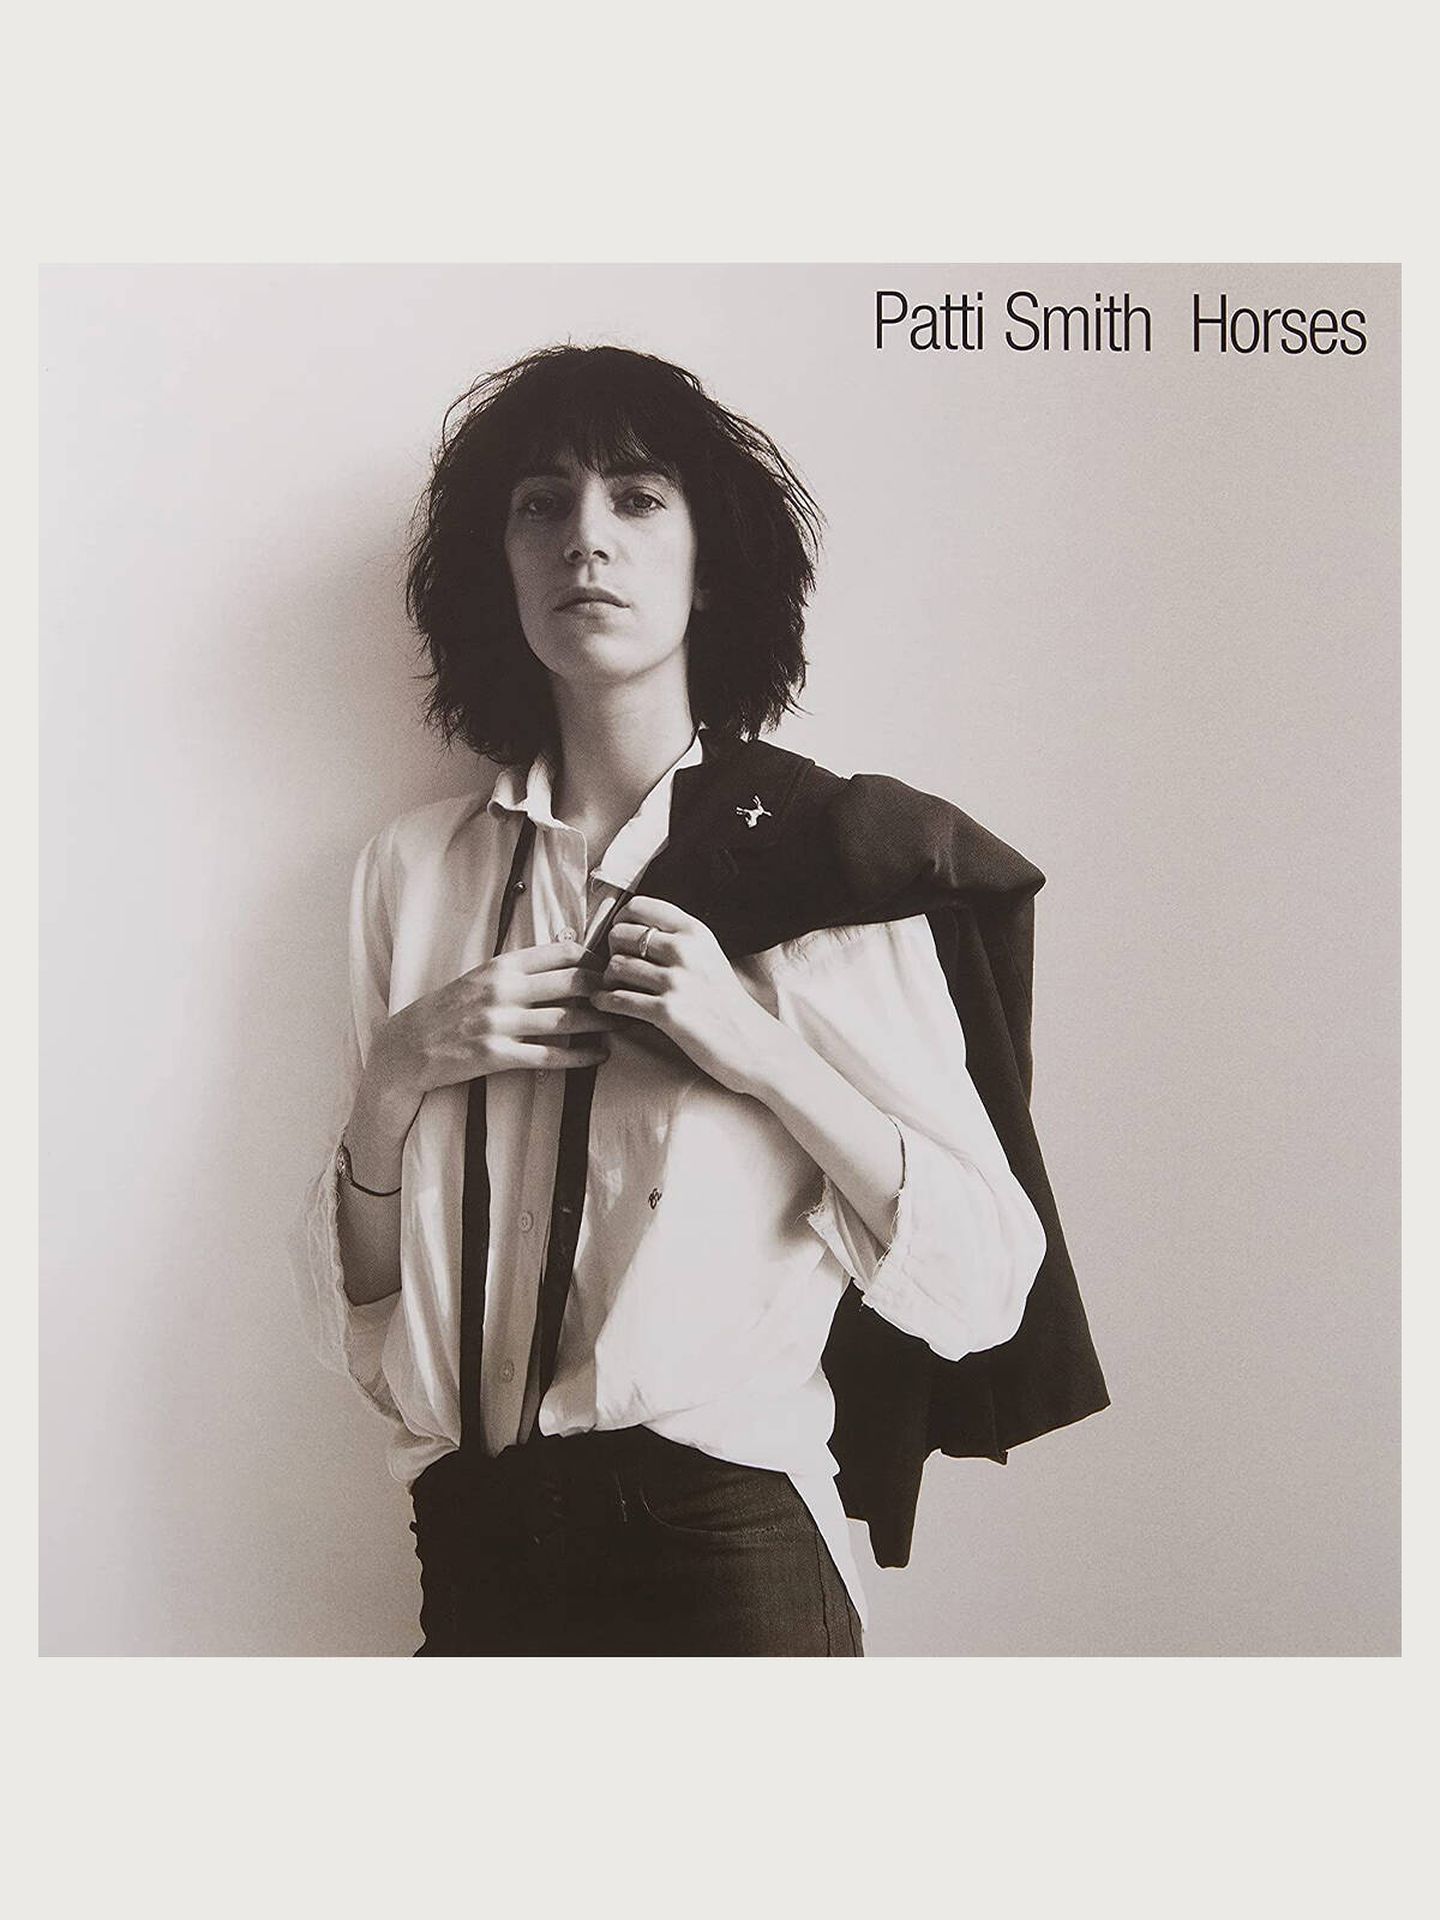 La foto de Patti Smith realizada por Robert Mapplethorpe que ilustró la portada de su disco 'Horses'.